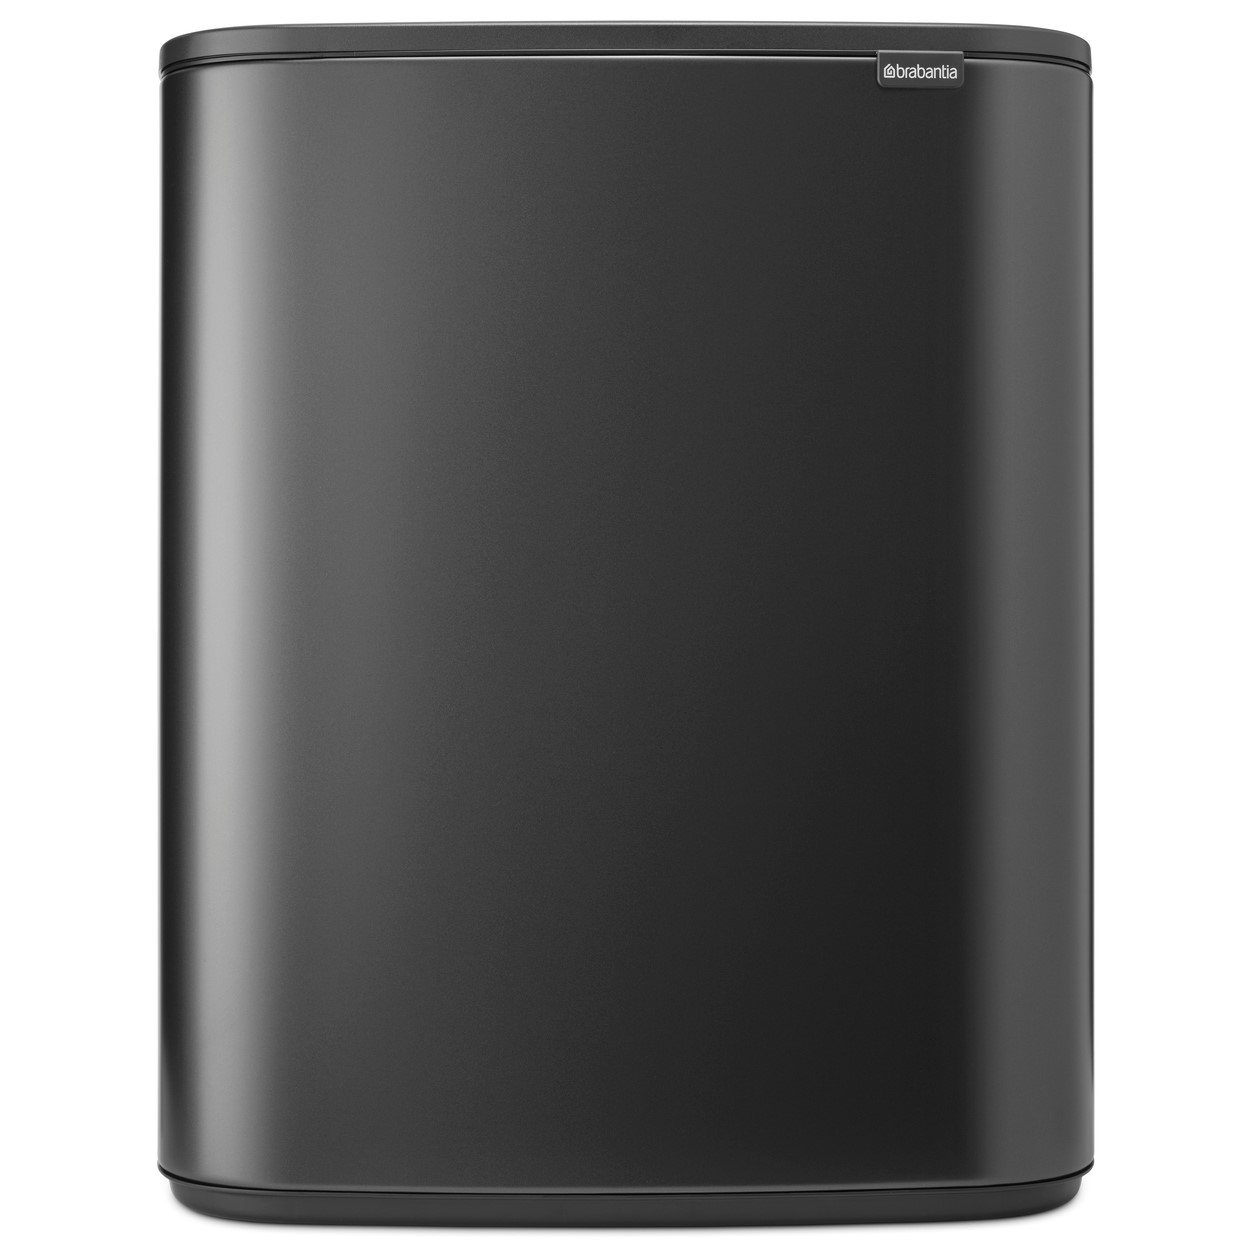 Dotykový odpadkový koš BO TOUCH BIN 2x 30 l, sebevědomě šedá, ocel, Brabantia